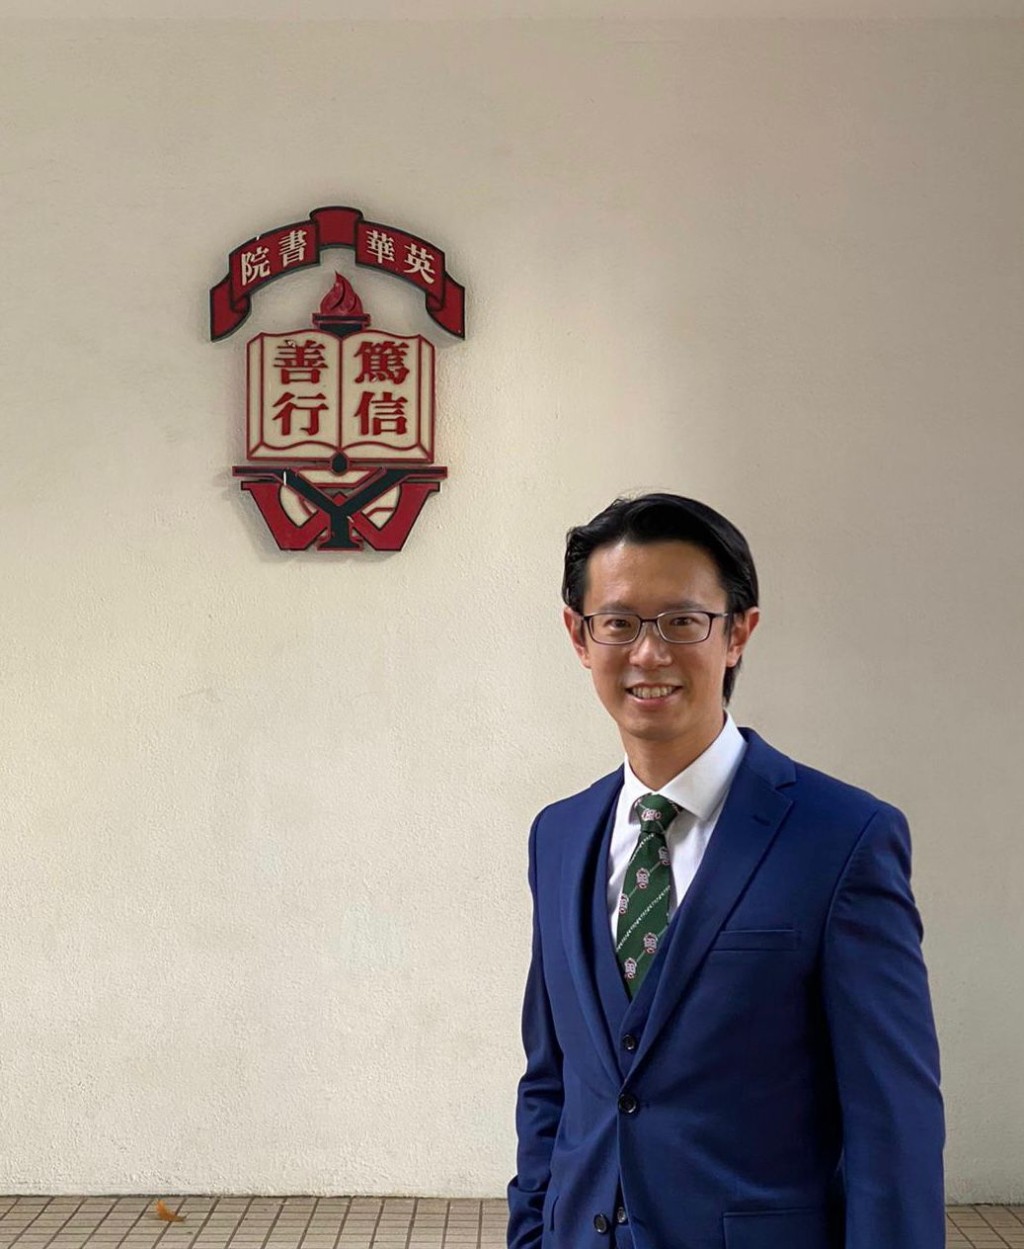 香港直接资助学校议会主席陈狄安表示，家长选校前应留意学校背景和发展。